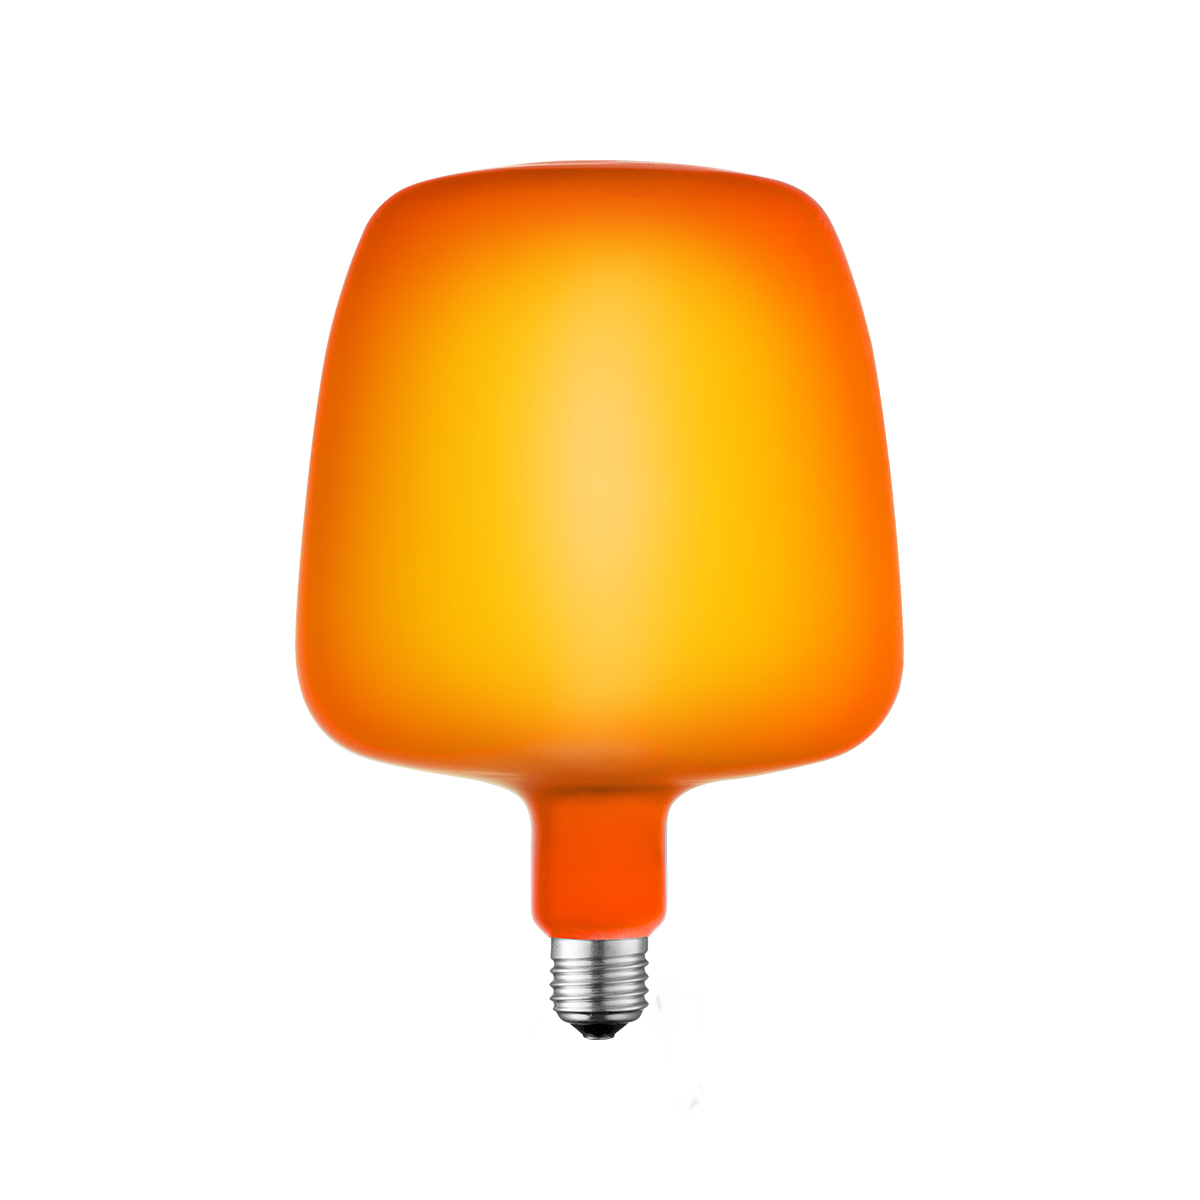 Tangla lighting - TLB-9003-04OG - LED Light Bulb Single Spiral filament - 4W orange opal - large - non dimmable - E27